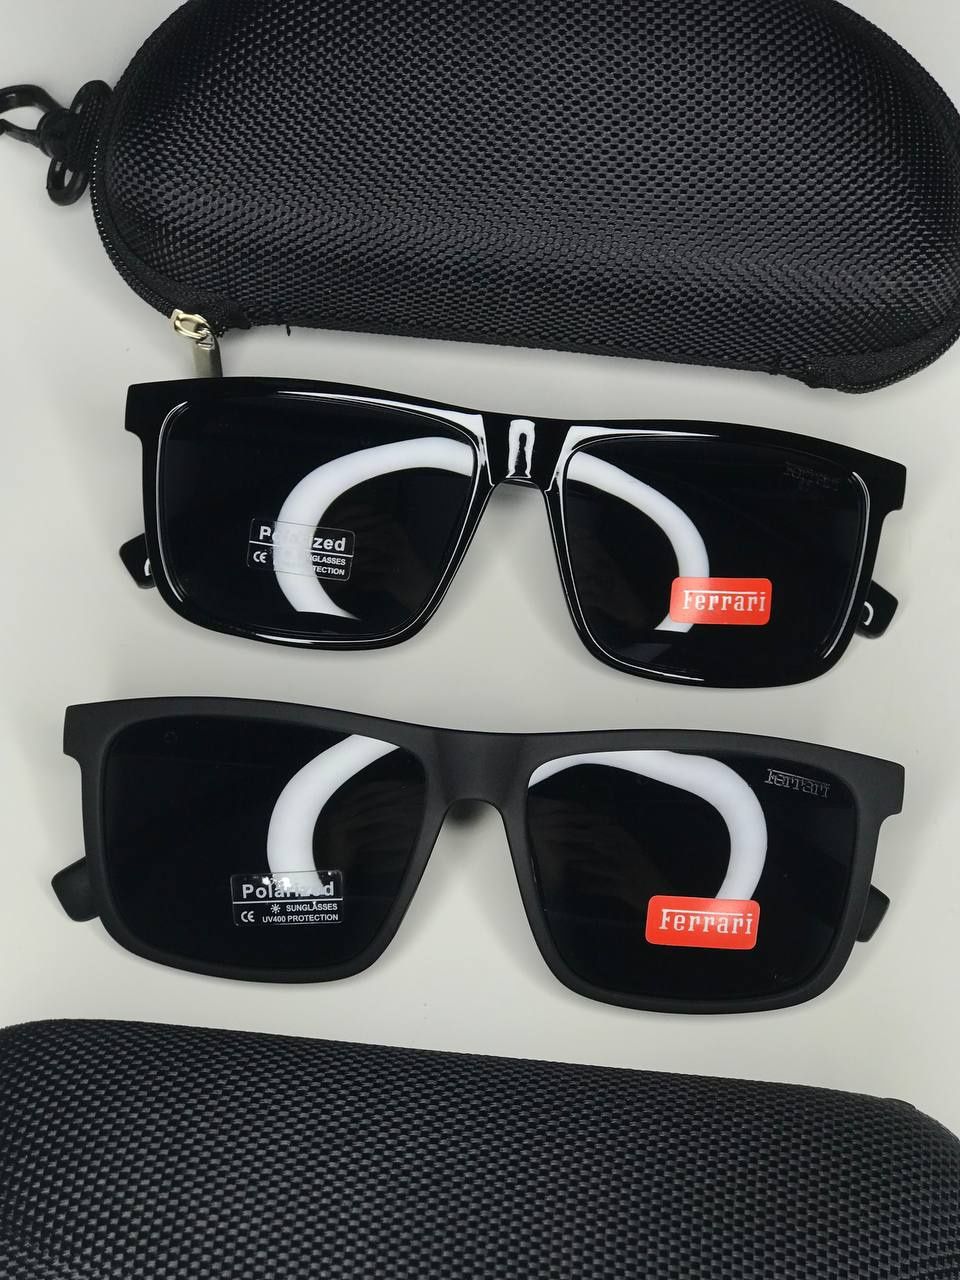 Сонцезахисні окуляри FERRARI Р 978 Polarized